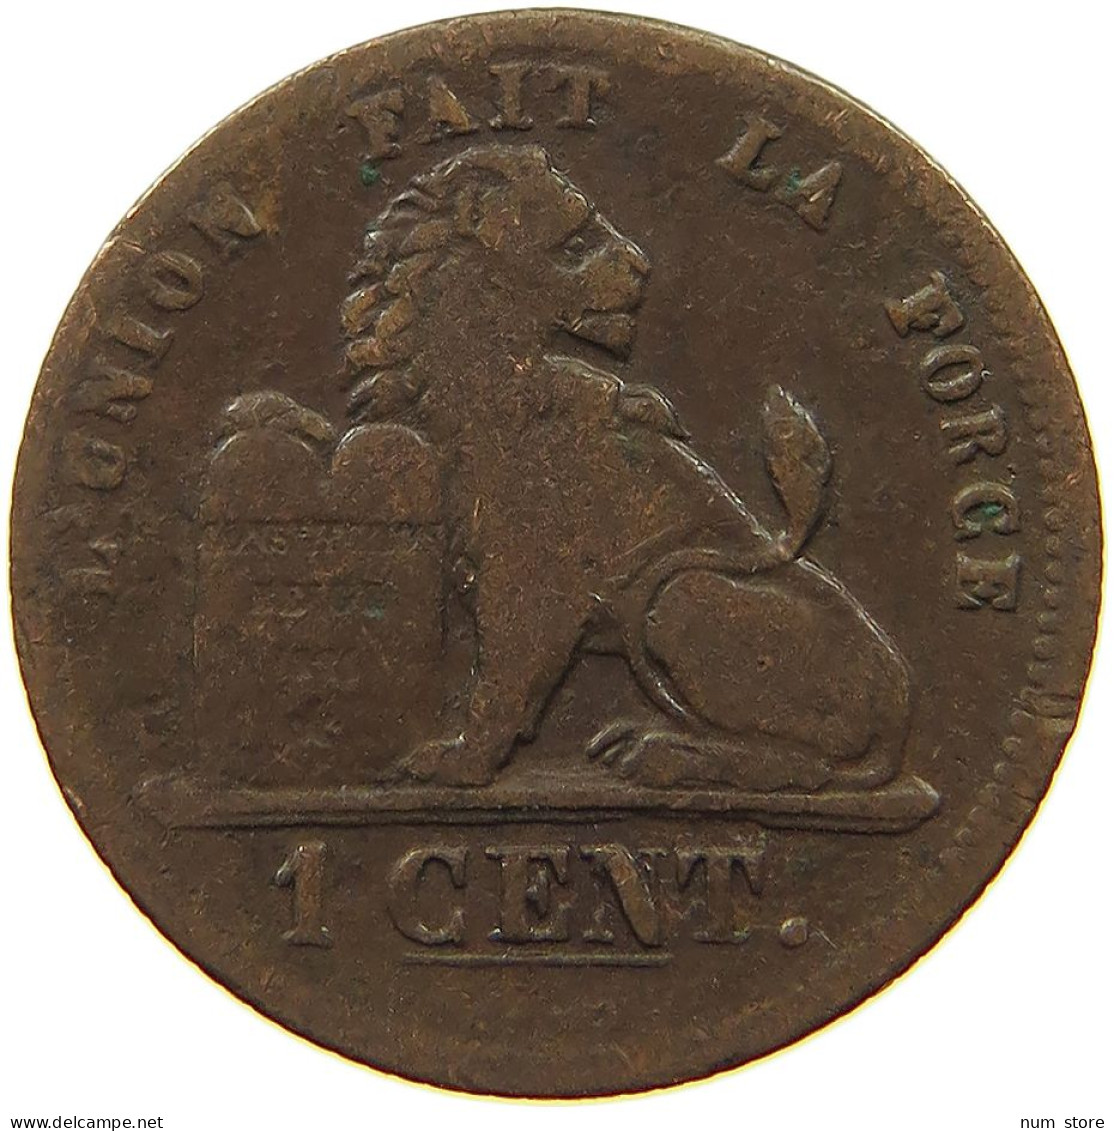 BELGIUM 1 CENTIME 1862 #s079 0009 - 1 Cent